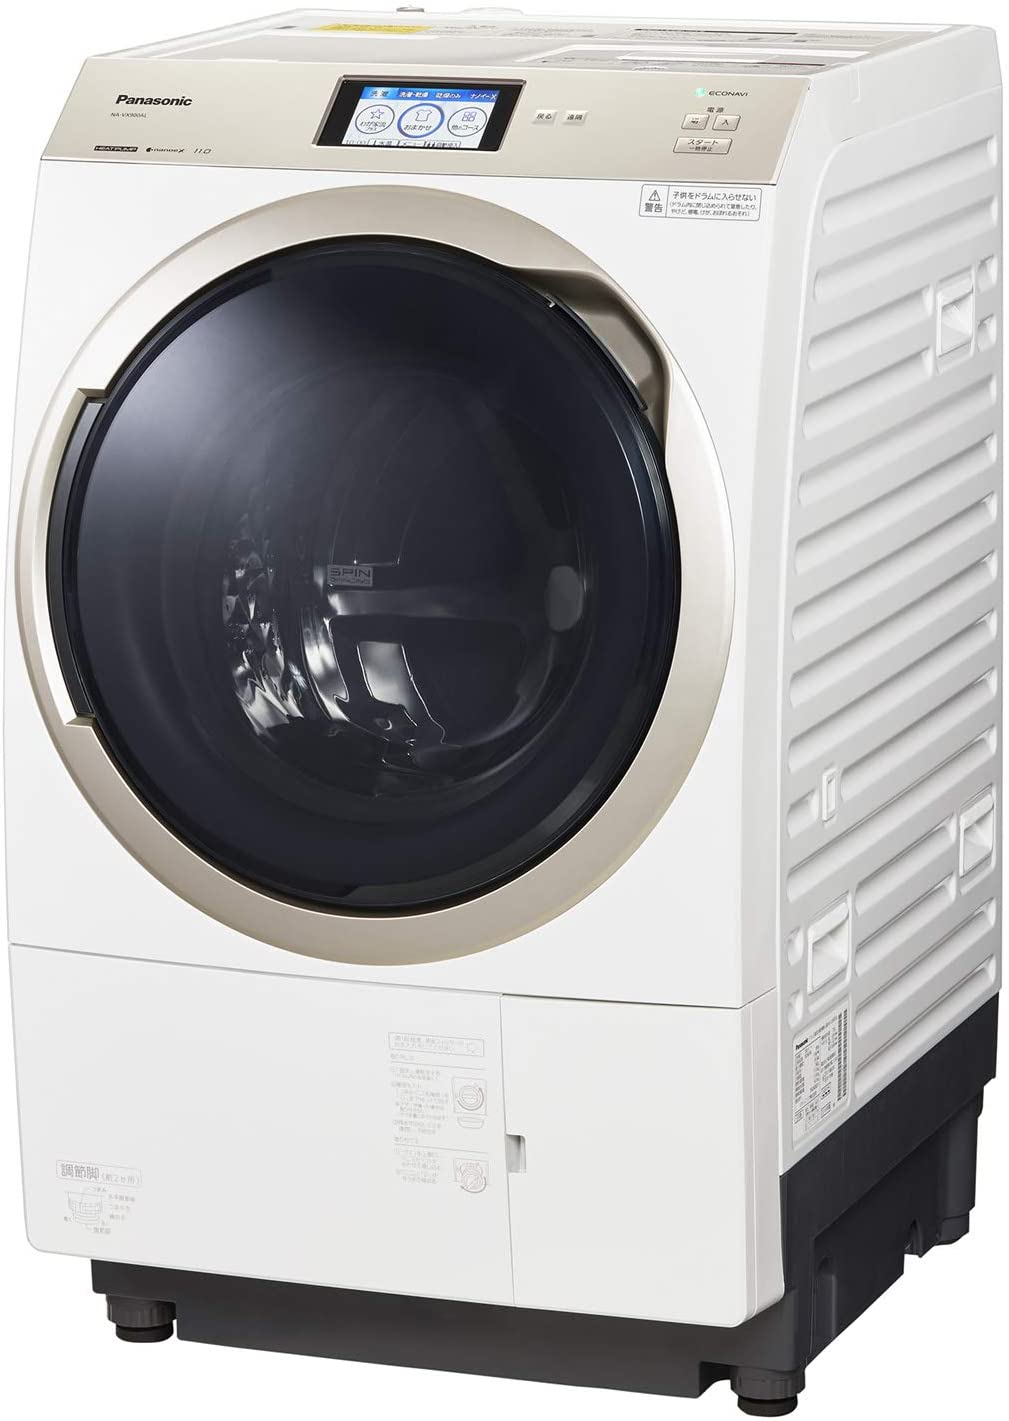 Panasonic(パナソニック) ななめドラム洗濯乾燥機　NA-VX900Aの商品画像1 